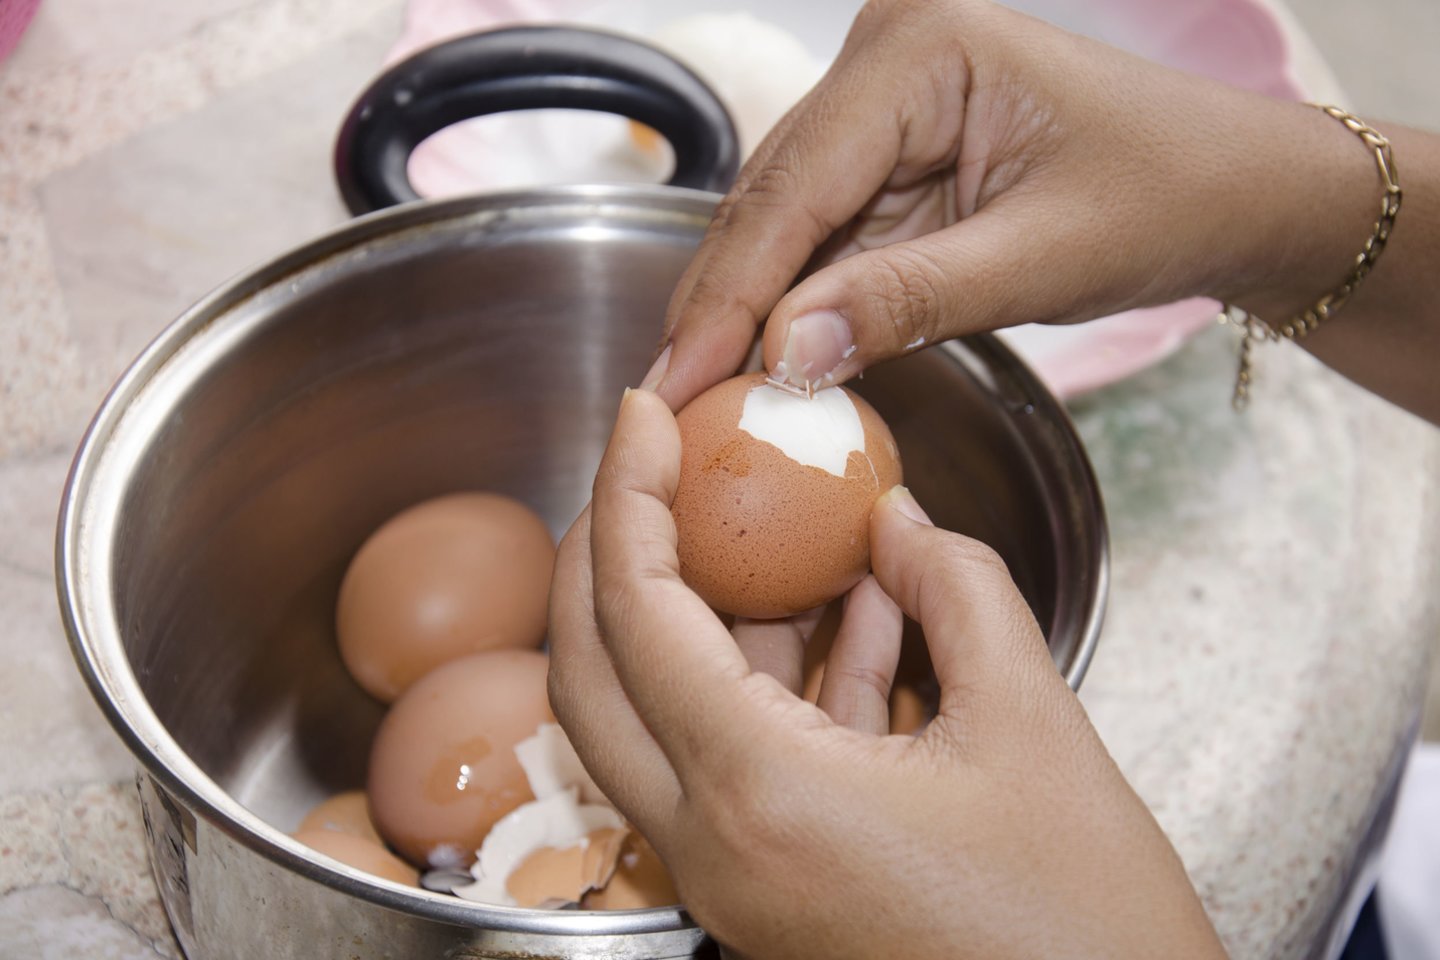 Aparate išvirtus kiaušinius lengviau nulupti nei virtus vandenyje puode. <br>123rf nuotr.